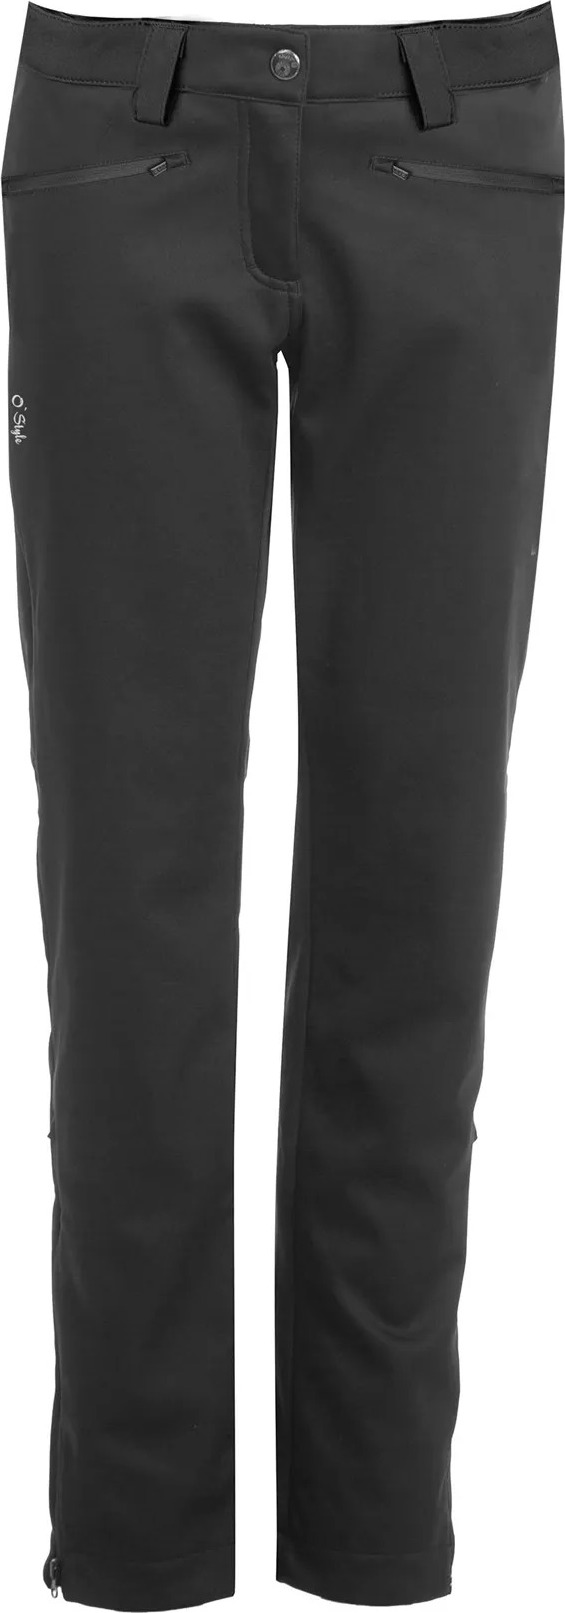 Dámské softshellové kalhoty O'STYLE Riva II černé Velikost: 42